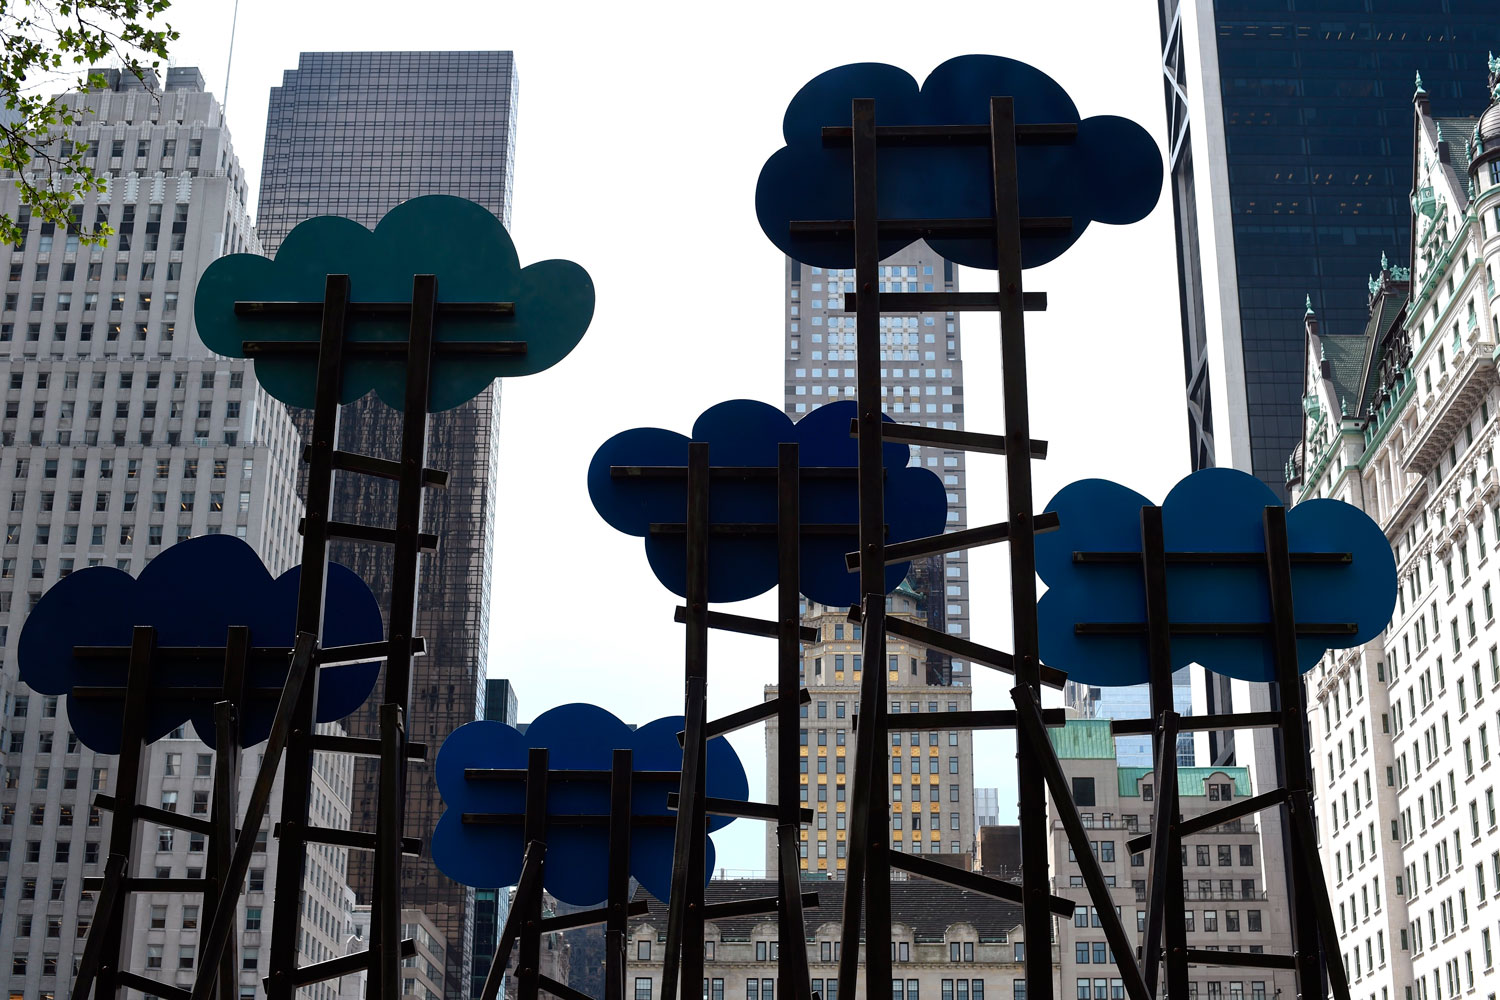 El artista suizo, Olaf Breuning, lleva su obra "Las Nubes" a Central Park